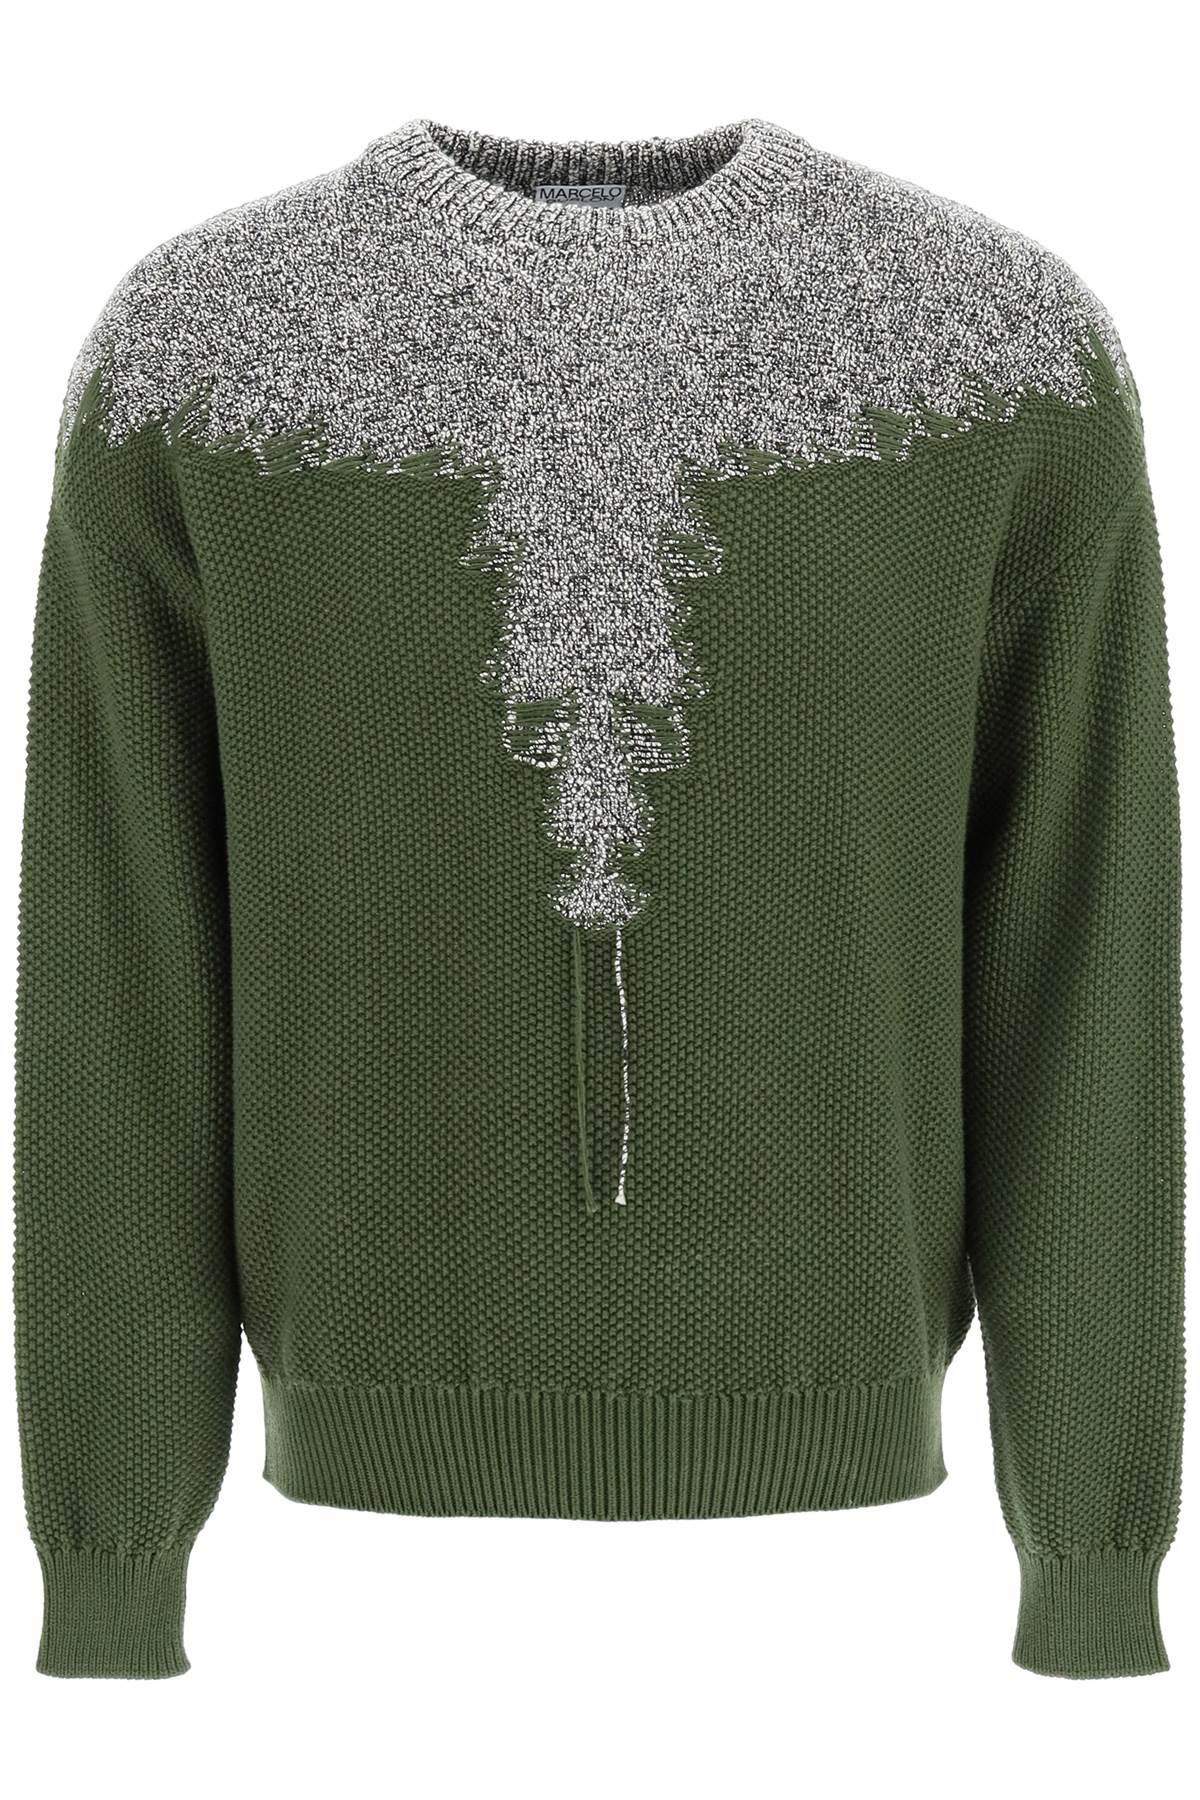 Marcelo Burlon 'block Wings' Cotton Sweater in Green for Men | Lyst Canada